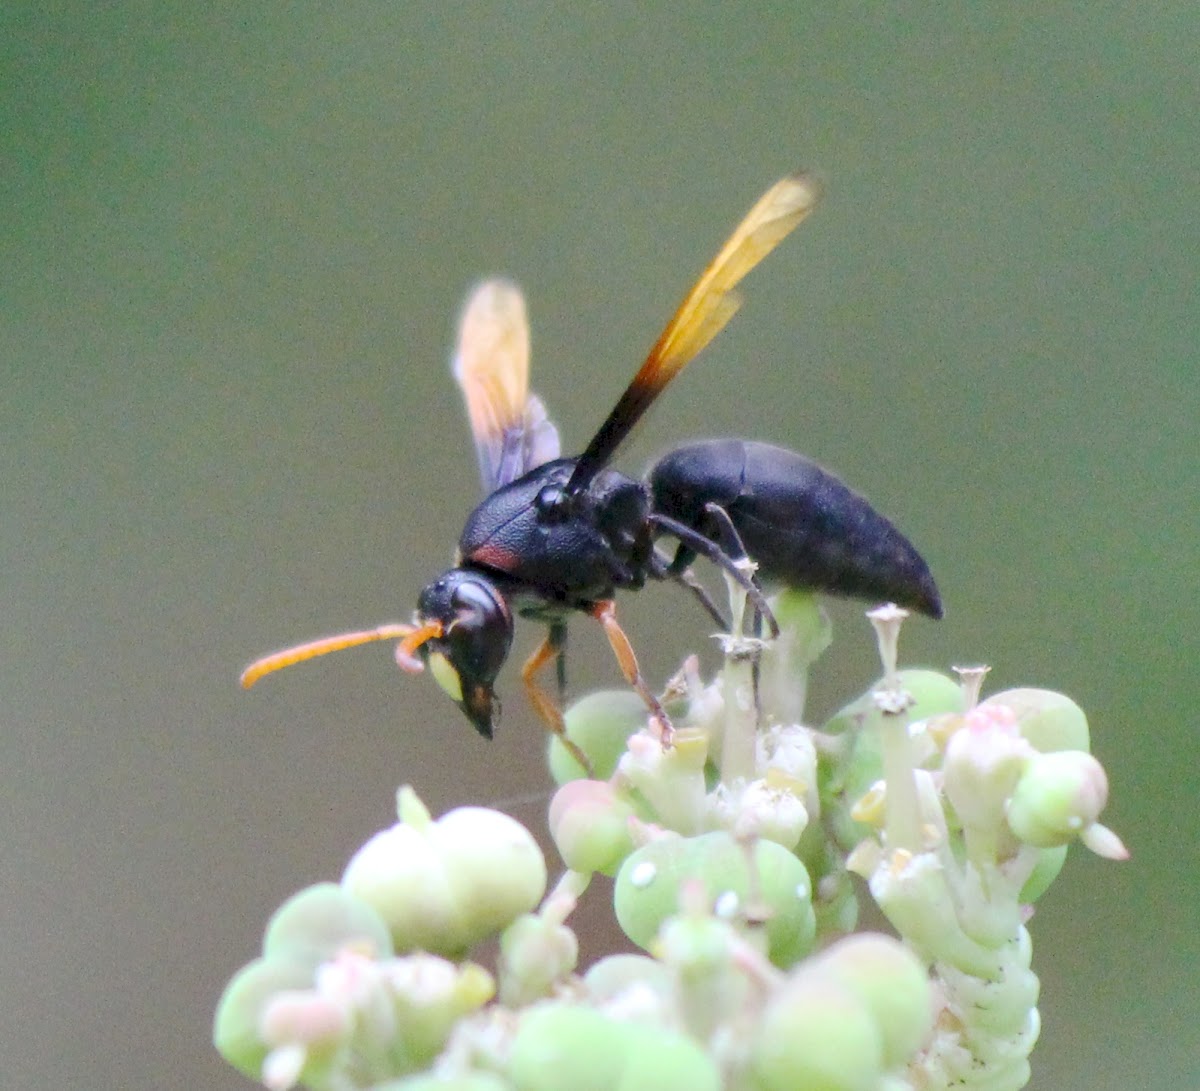 Black Potter wasp